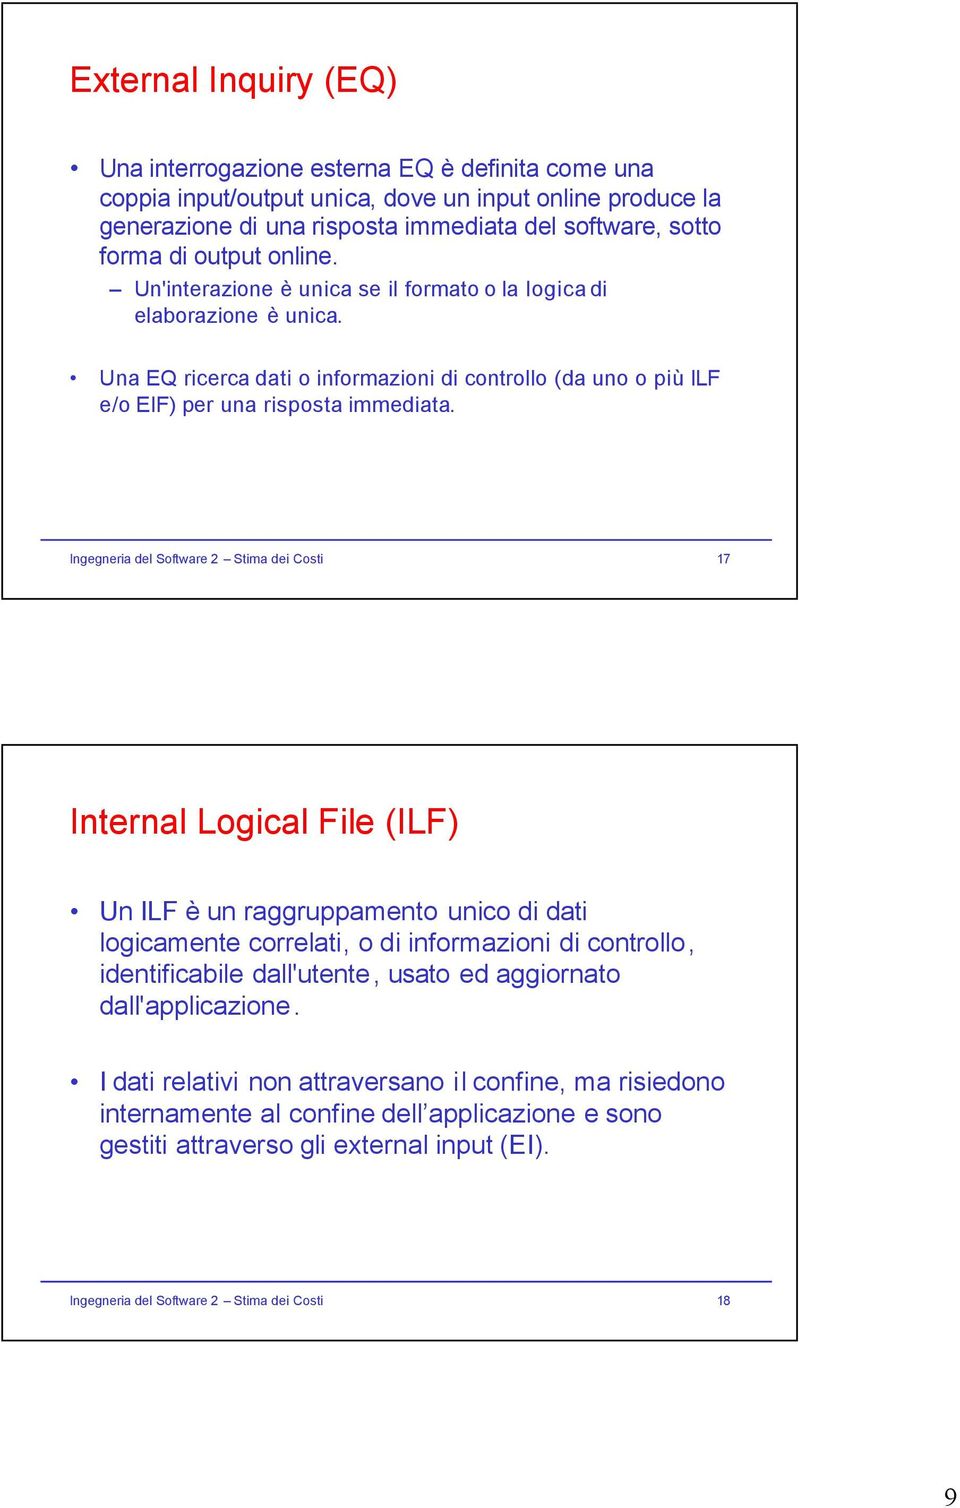 Ingegneria del Software 2 Stima dei Costi 17 Internal Logical File (ILF) Un ILF è un raggruppamento unico di dati logicamente correlati, o di informazioni di controllo, identificabile dall'utente,